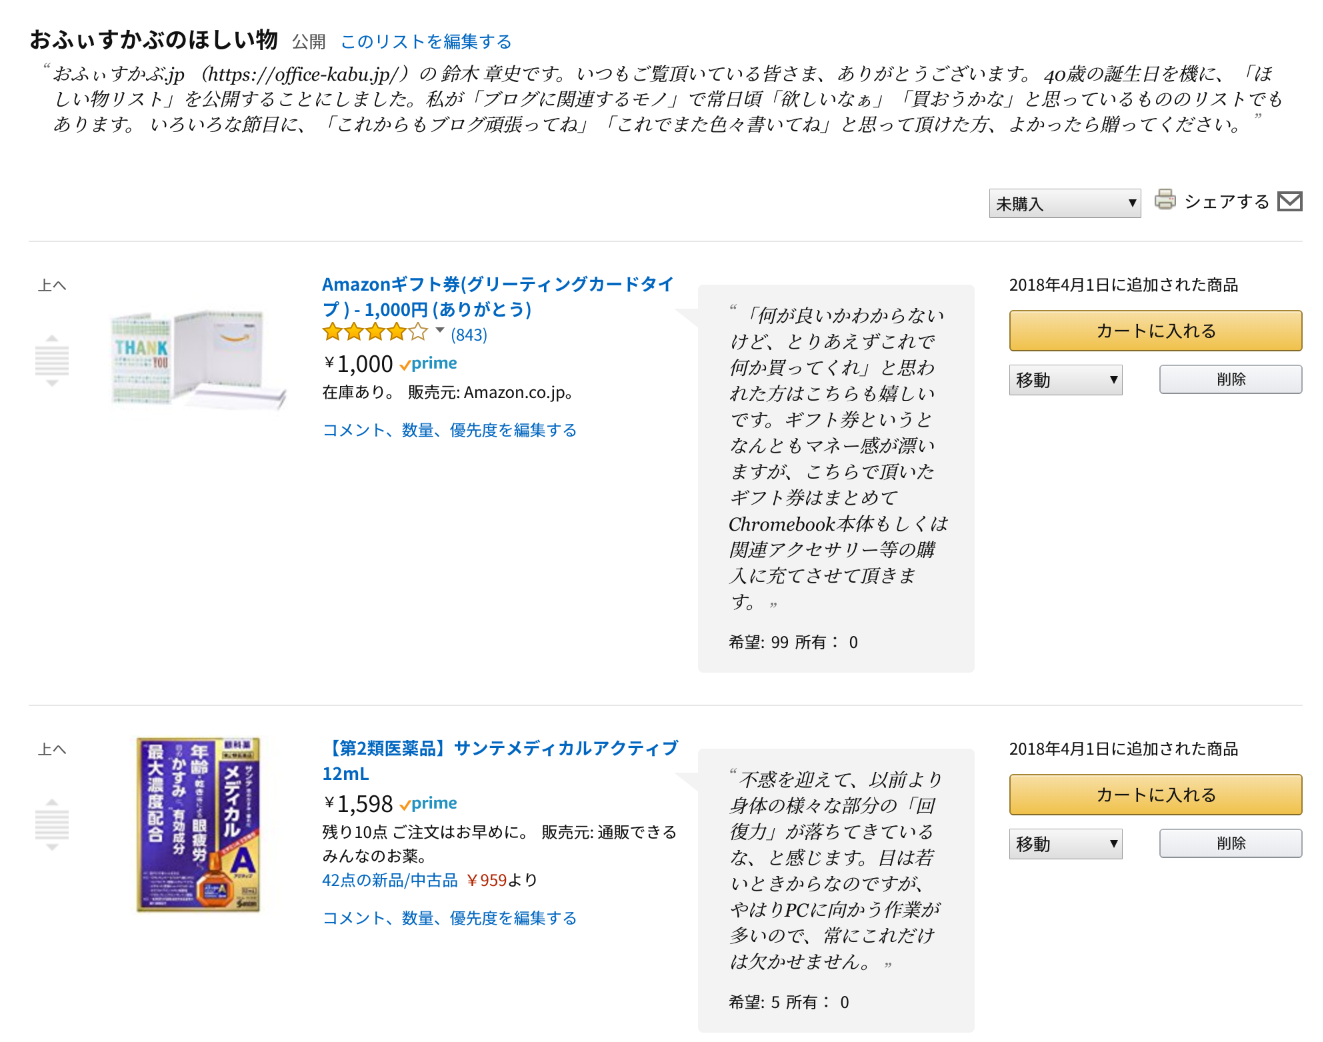 おふぃすかぶのほしい物 | Amazon.co.jp